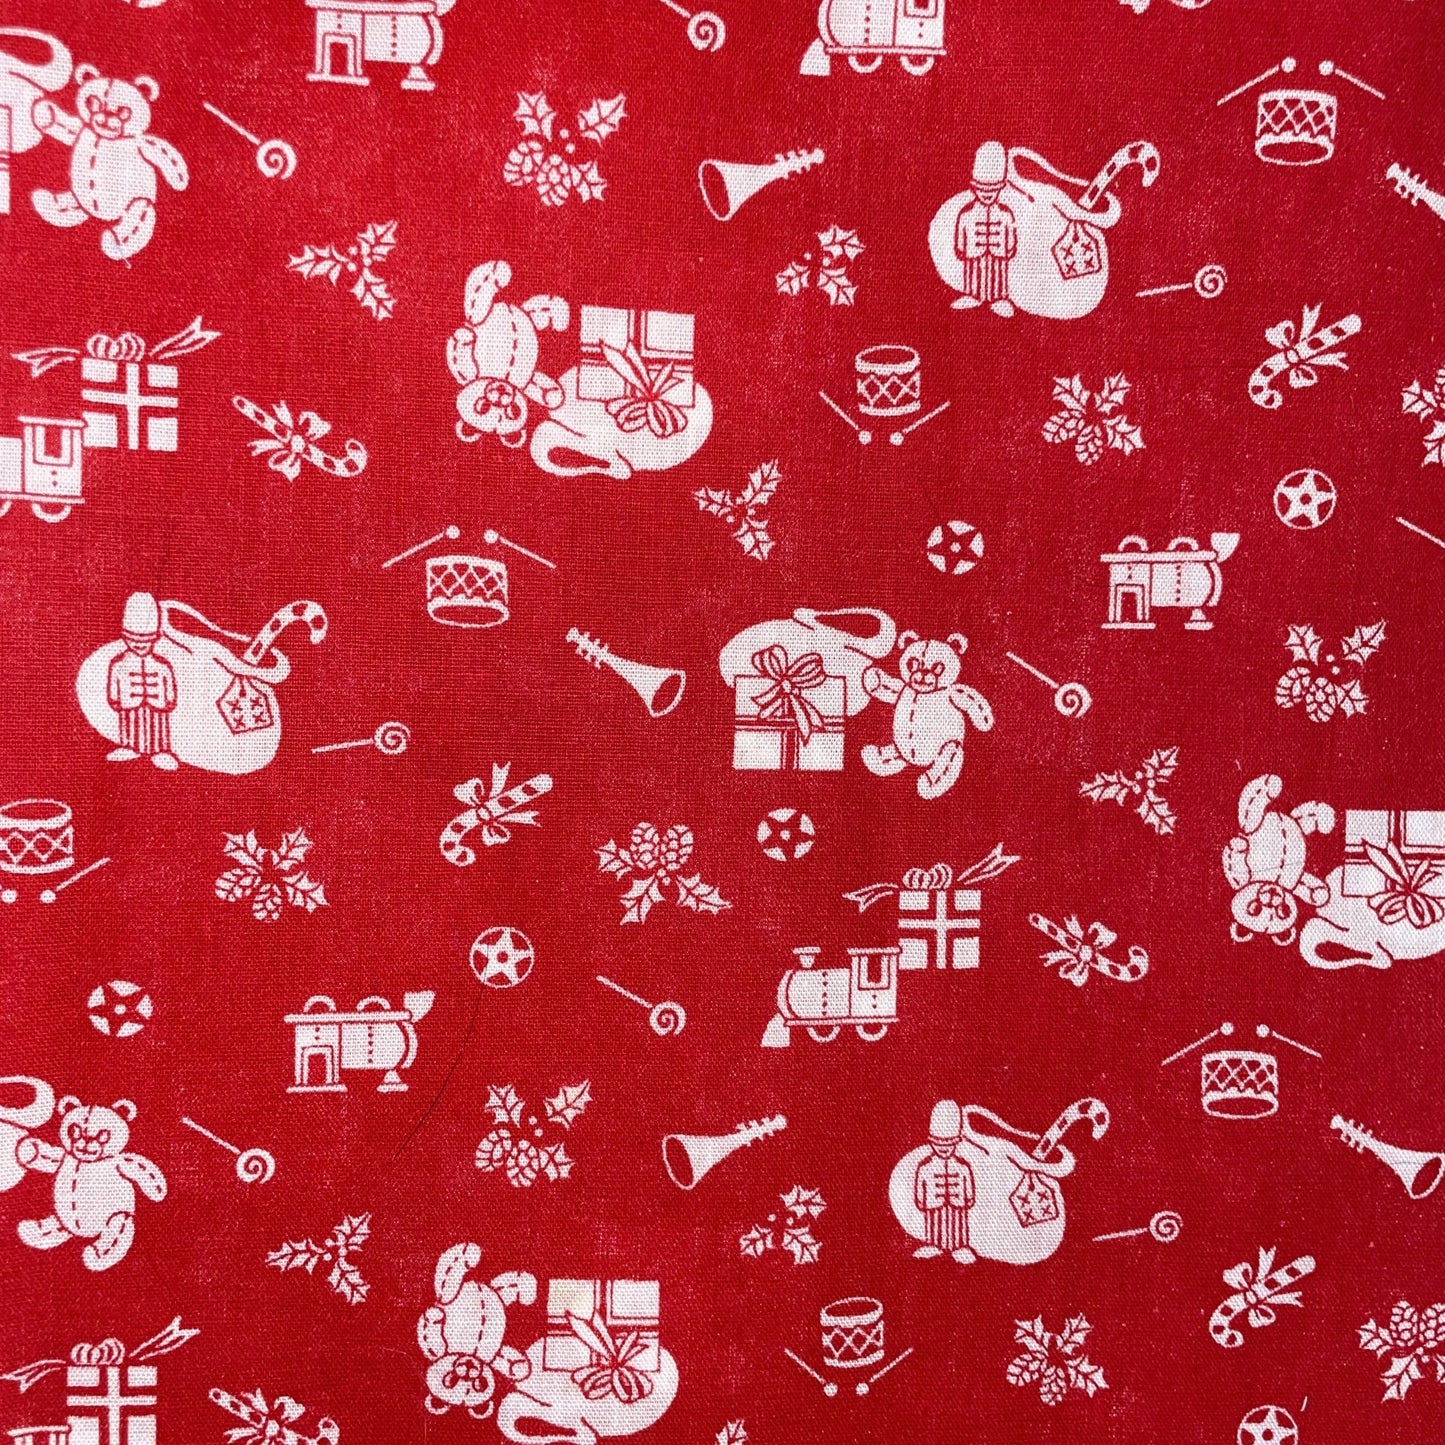 Santa's Toys on Red Background-Wamsutta-BTY